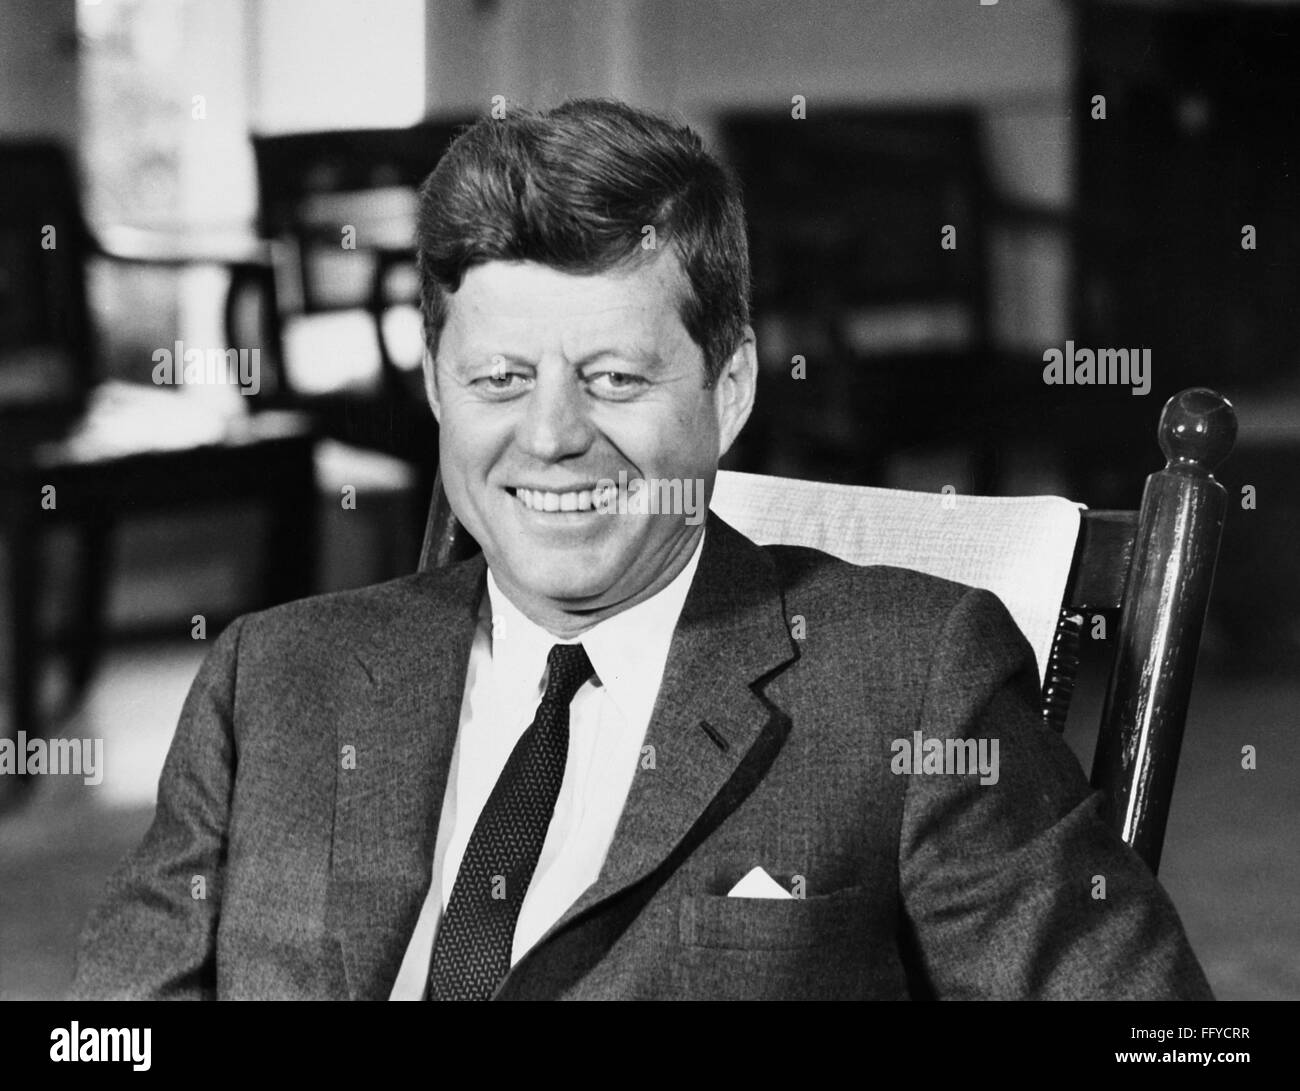 KENNEDY (1917-1963). /n35th Präsident der Vereinigten Staaten. Fotografiert im Weißen Haus in Washington, D.C., am Vorabend von seinem 46. Geburtstag, 28. Mai 1963. Stockfoto